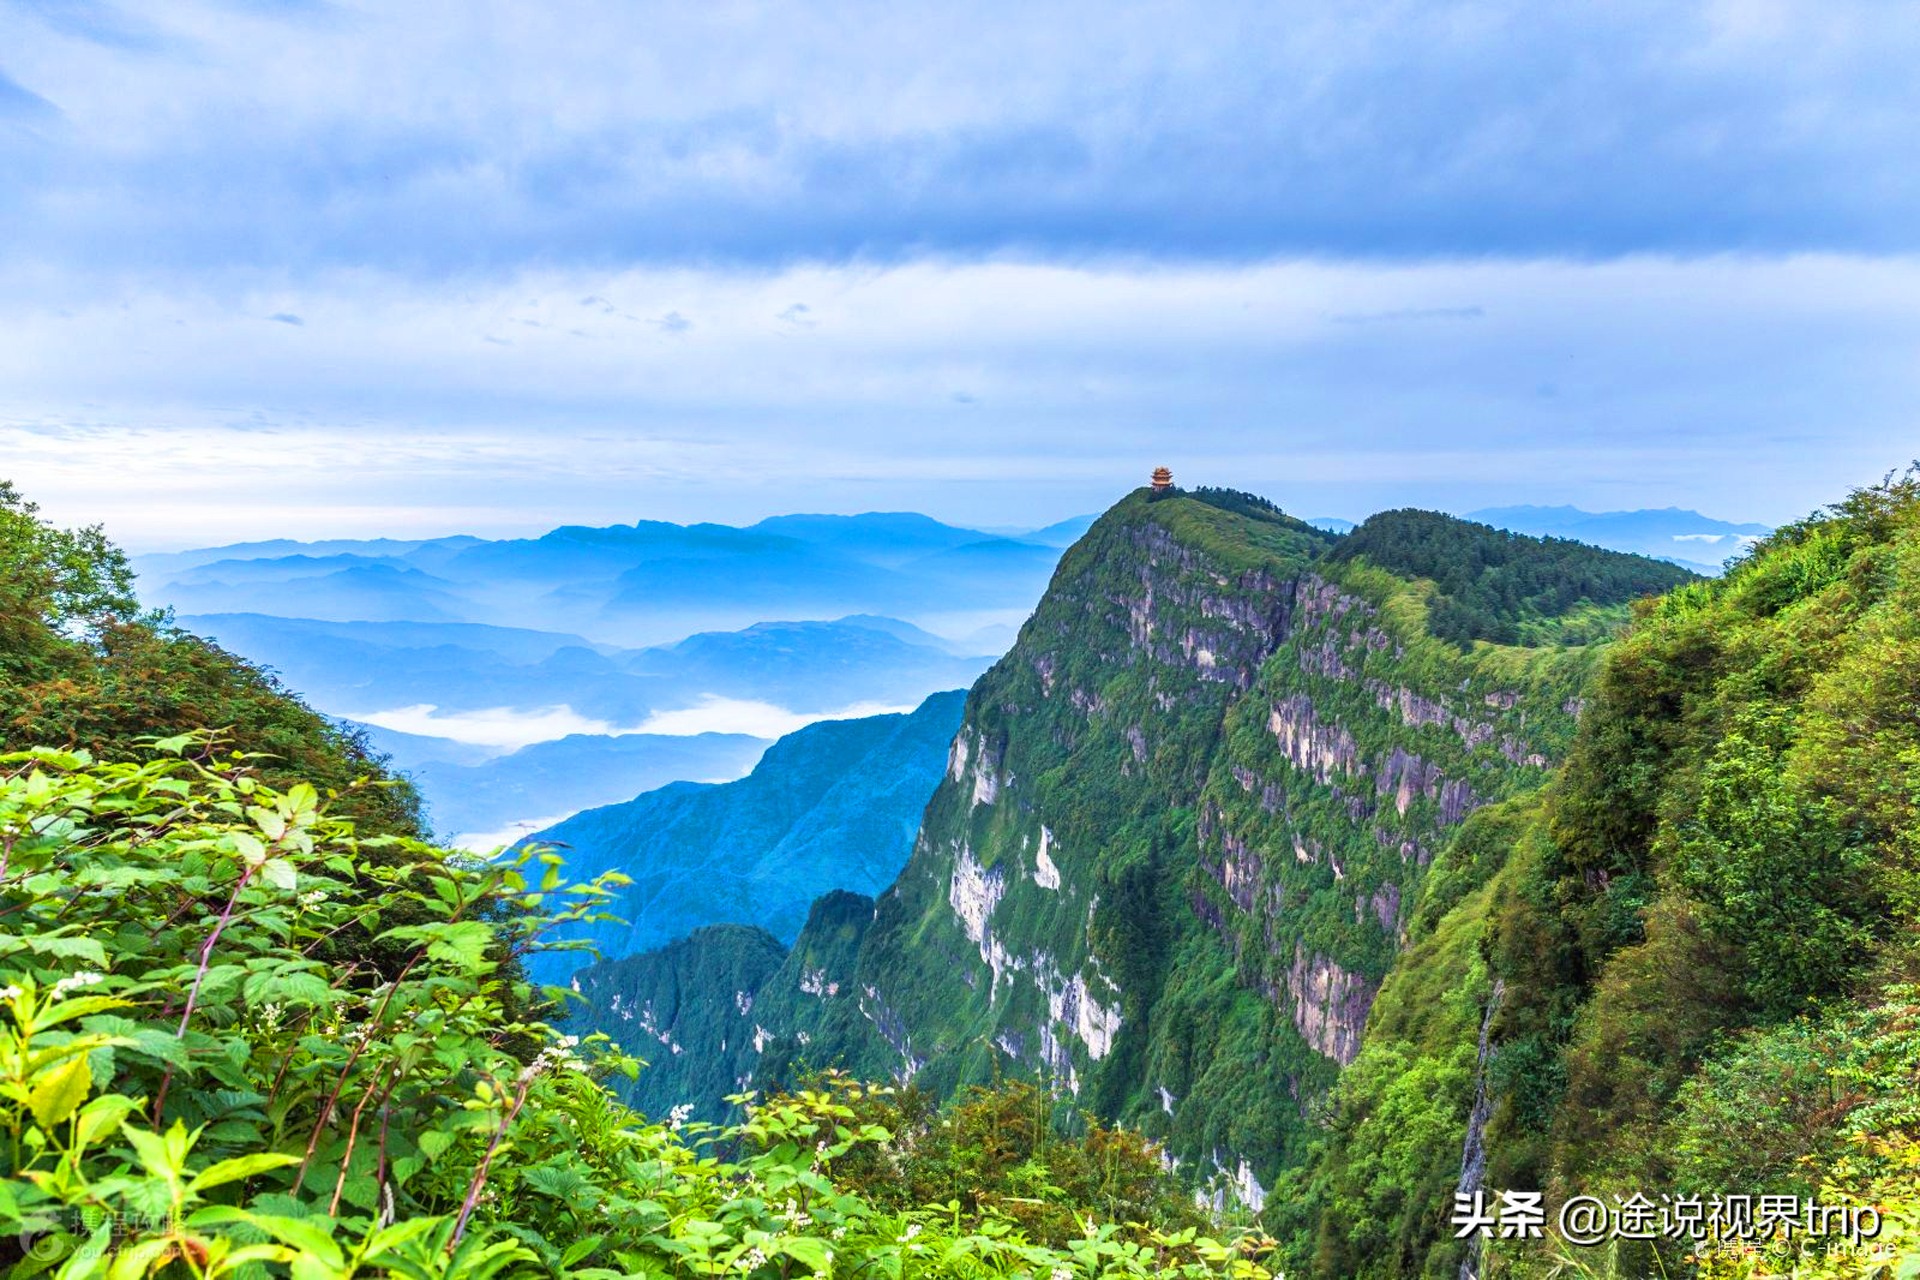 峨眉山,位于四川,是中国四大佛教名山之一,世界文化与自然双遗产